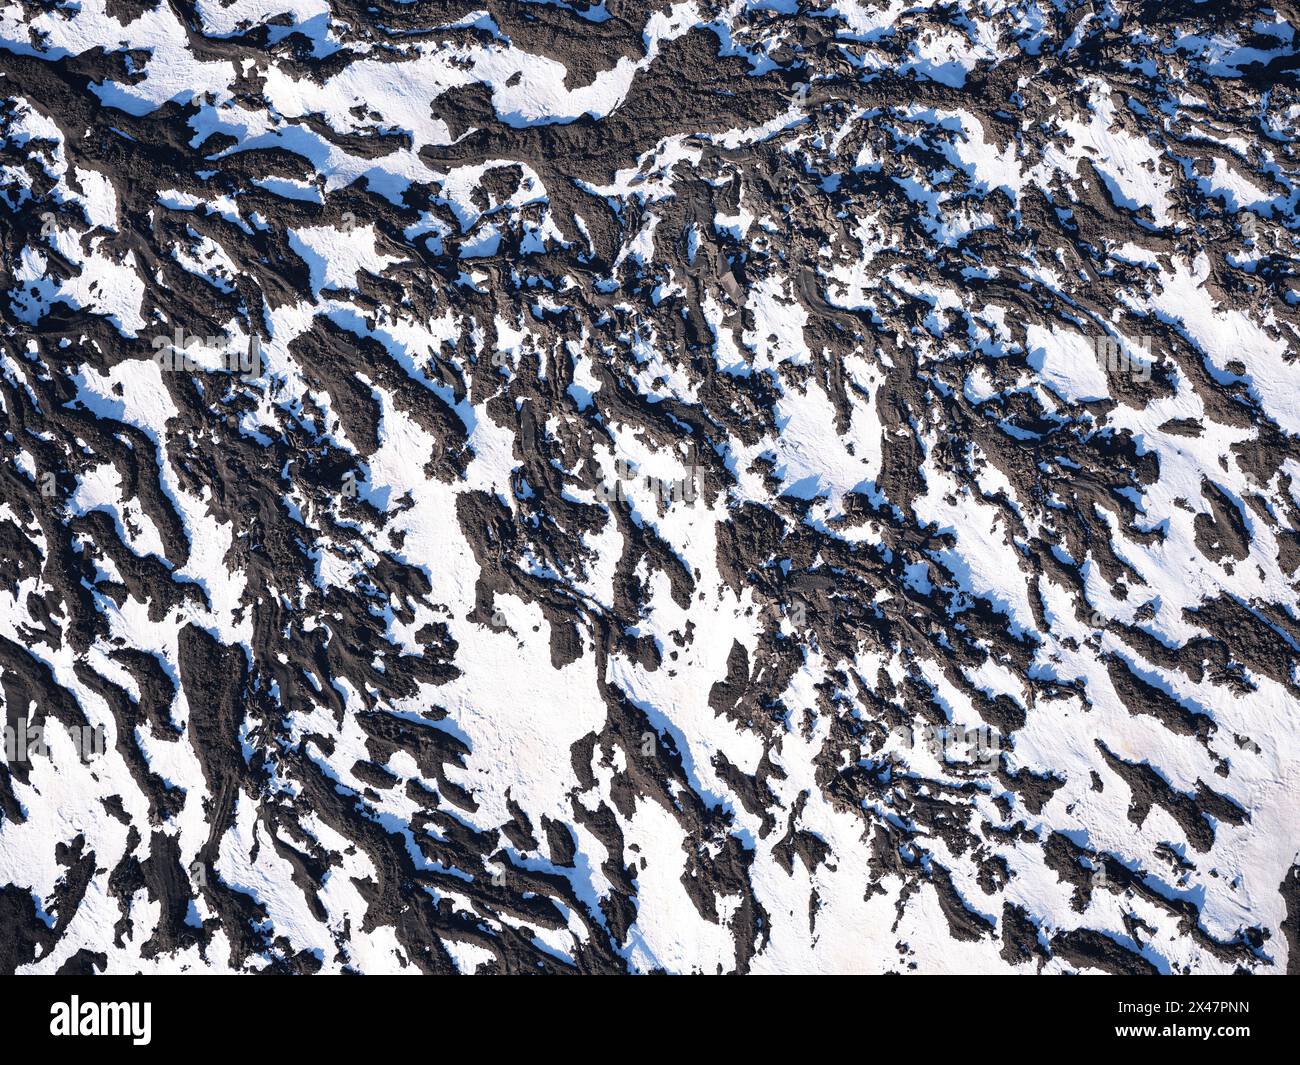 VUE AÉRIENNE. La neige de printemps et la lave coulent sur le versant nord de l'Etna. Ville métropolitaine de Catane, Sicile, Italie. Banque D'Images